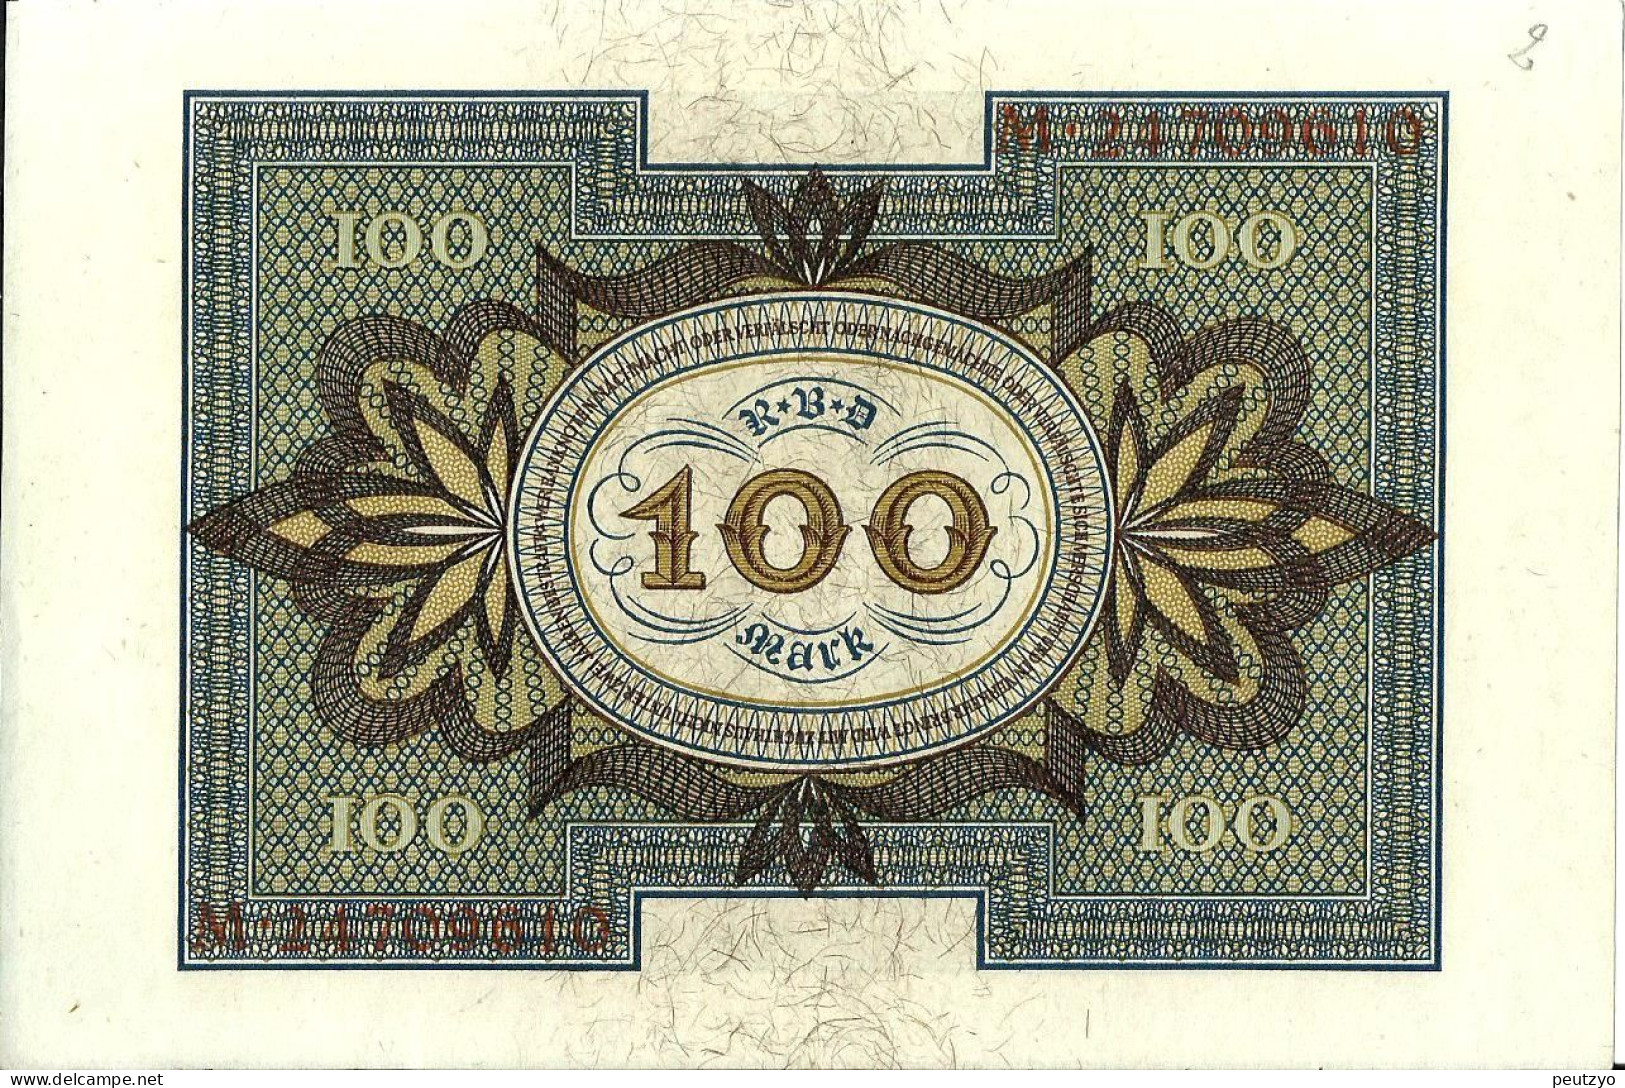 100 Mark 1-11-1920 - Allemagne Serie M- Billet Neuf  Neue Notiz  N°2 A83 - 100 Mark